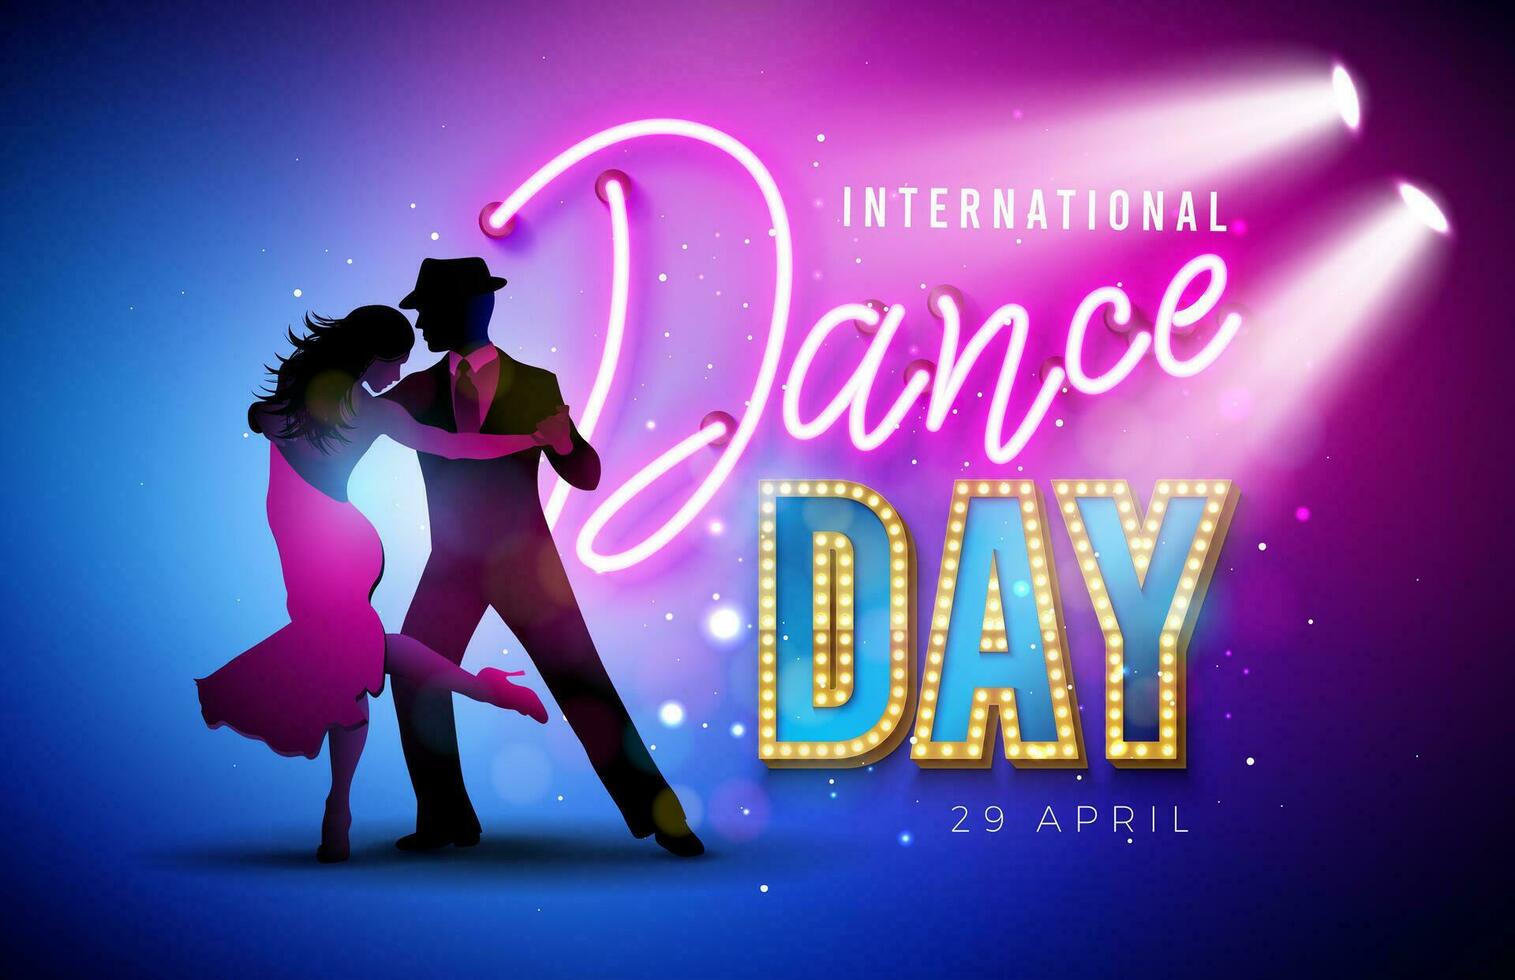 International tanzen Tag Vektor Illustration mit Tango Tanzen Paar und hell Neon- Licht Beschriftung auf glänzend bunt Hintergrund. April 29 Feier Design Vorlage zum Banner, Flyer, Einladung